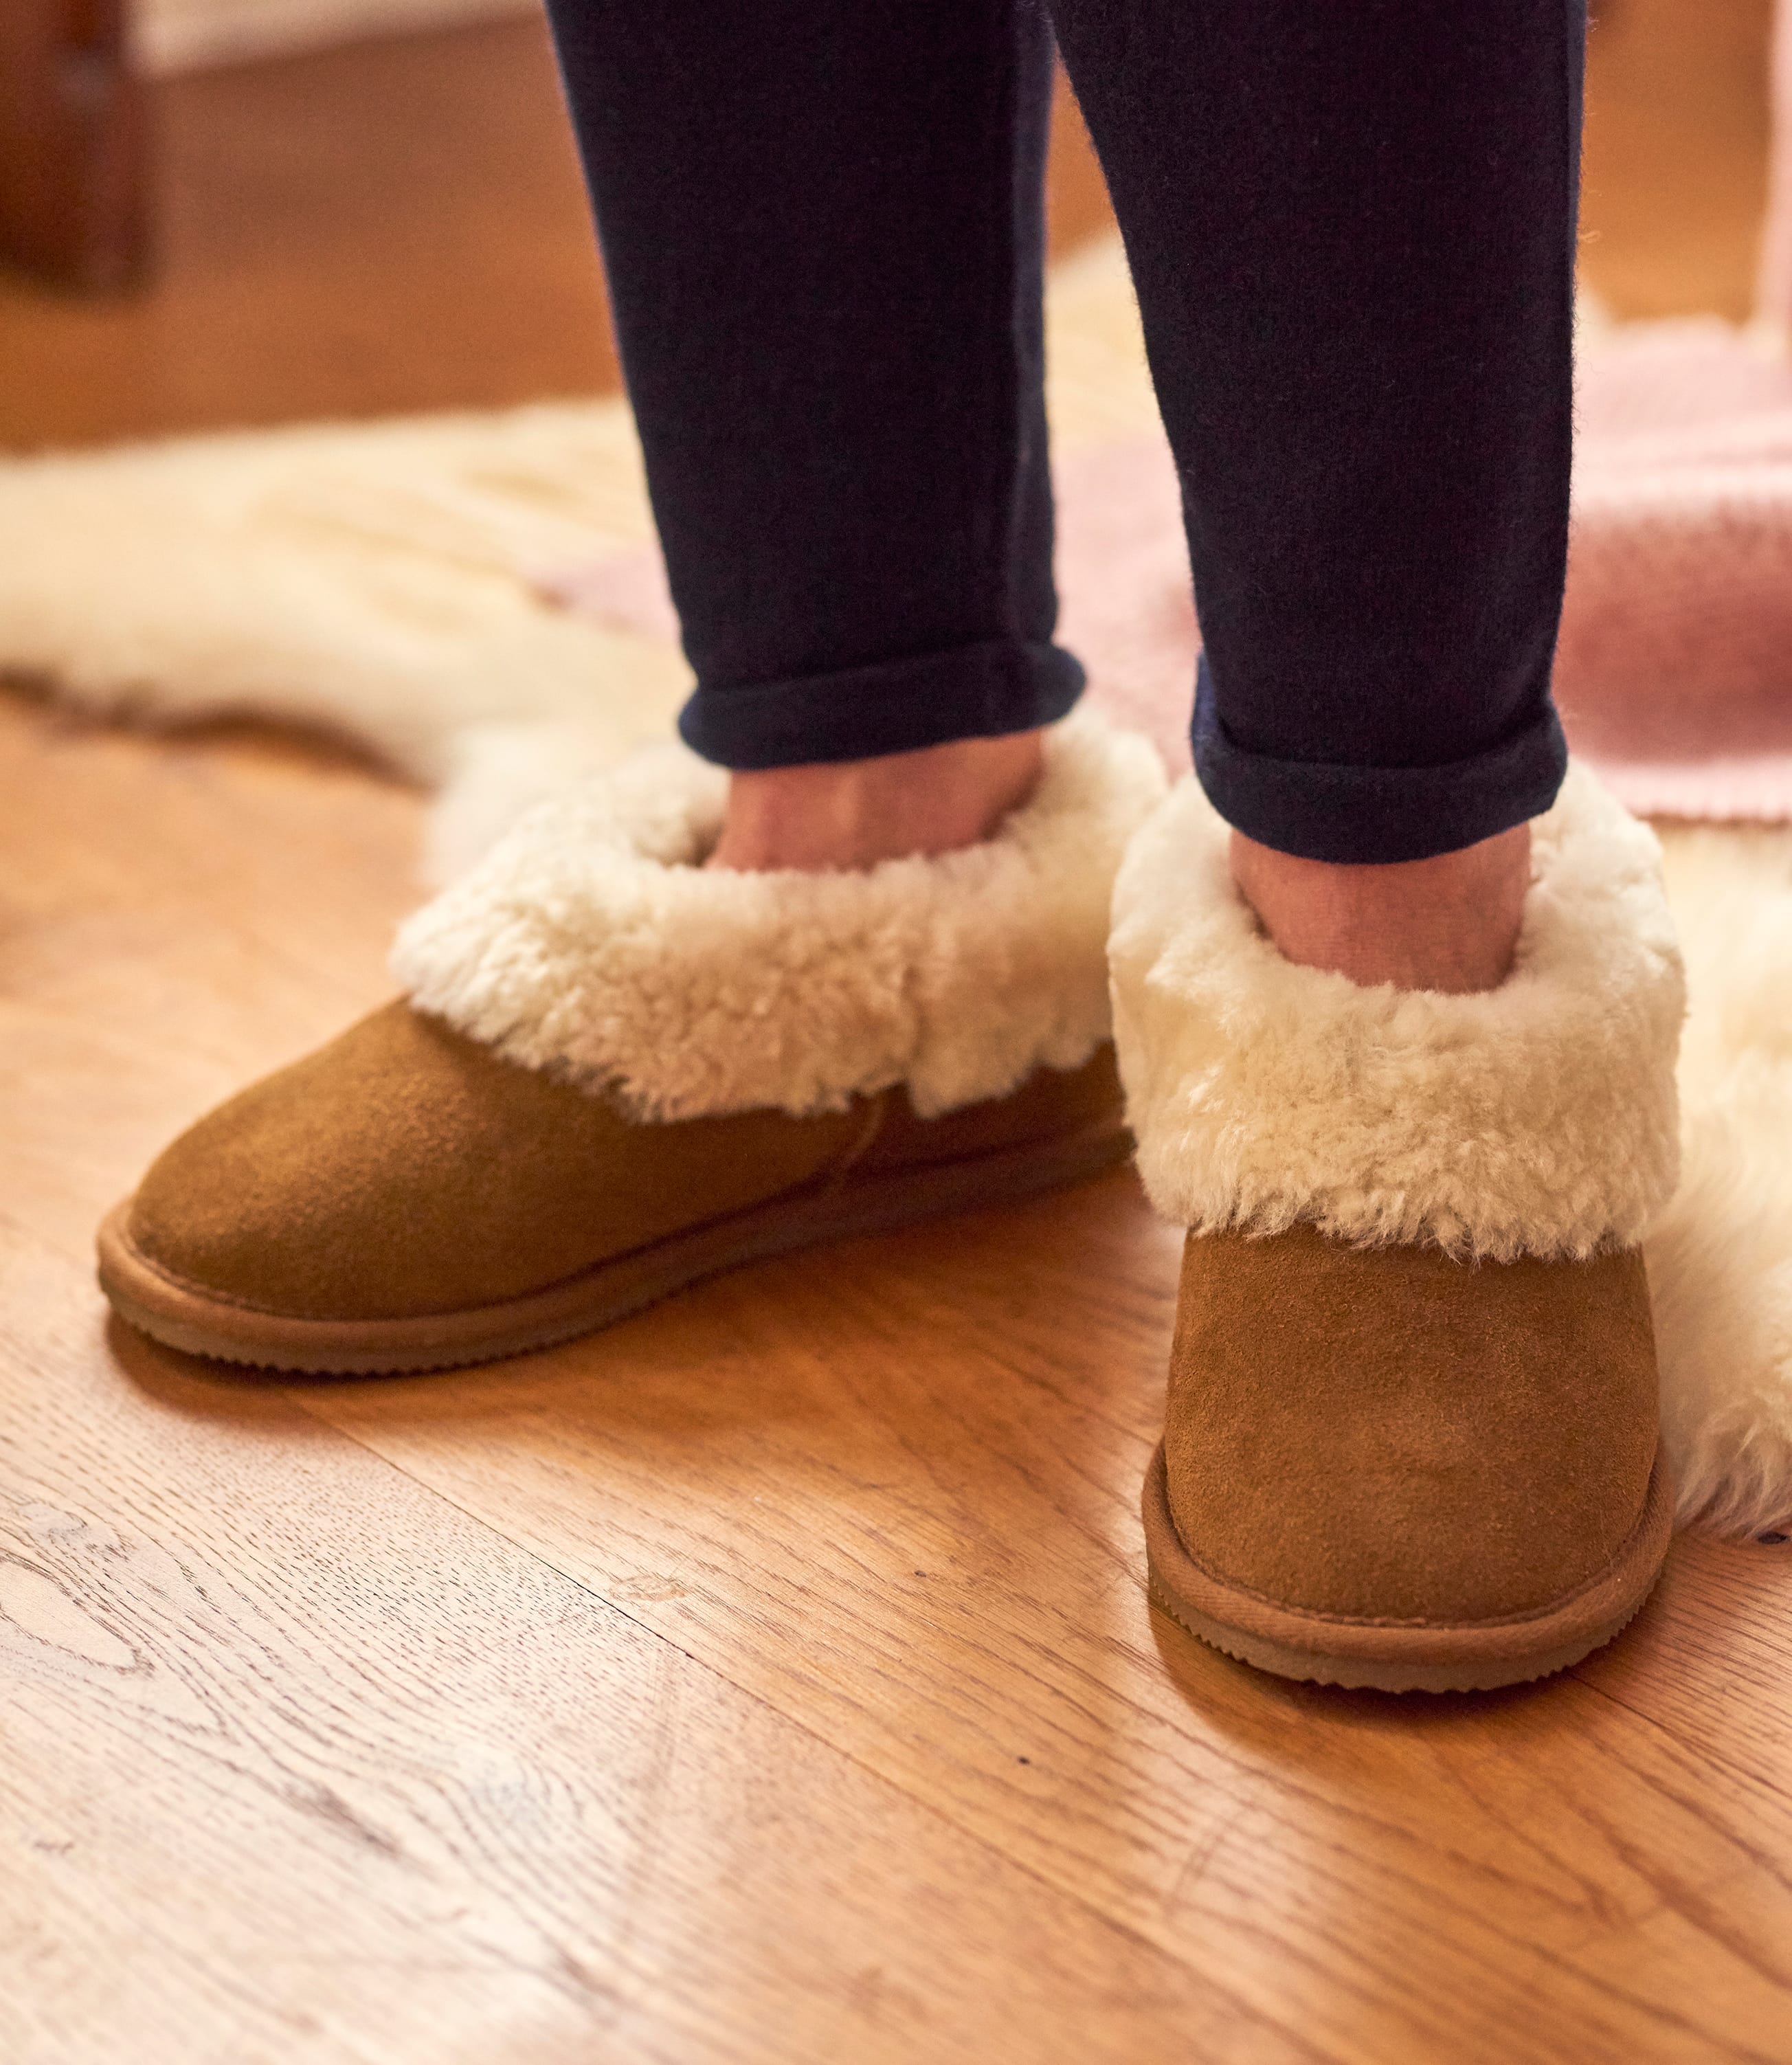 women's sheepskin slippers clearance